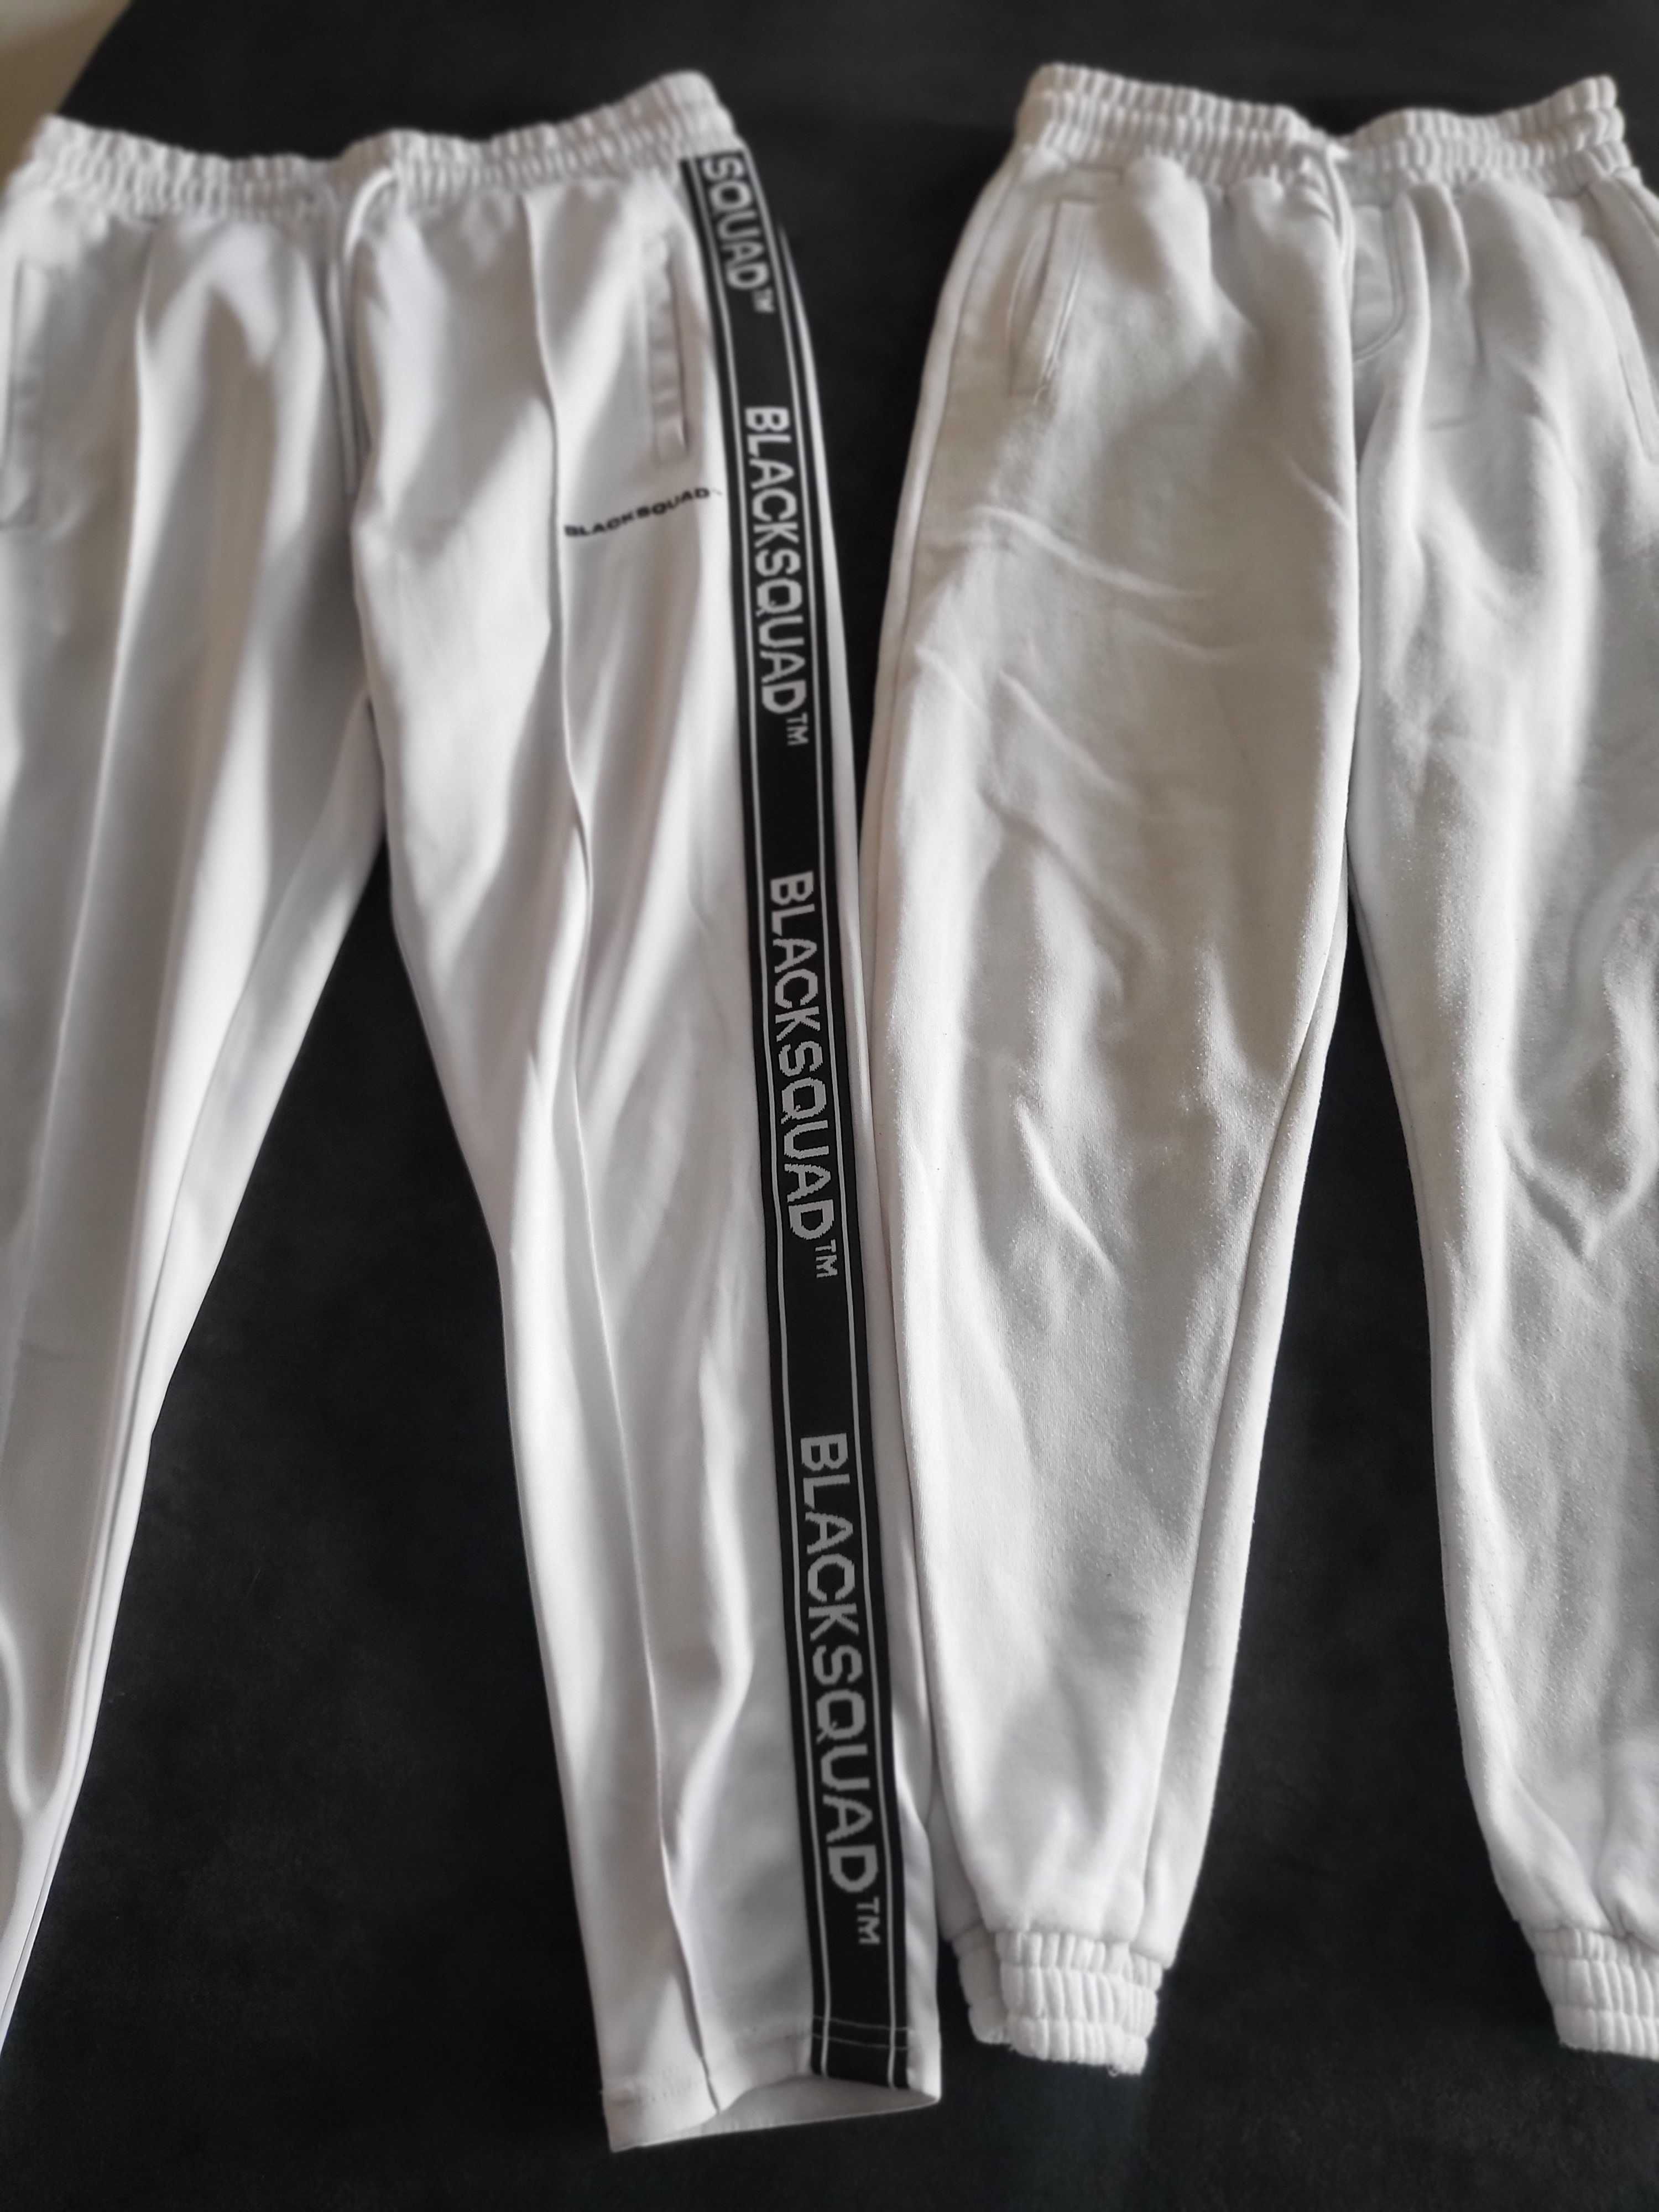 białe spodnie dresowe męskie xs / s new yorker